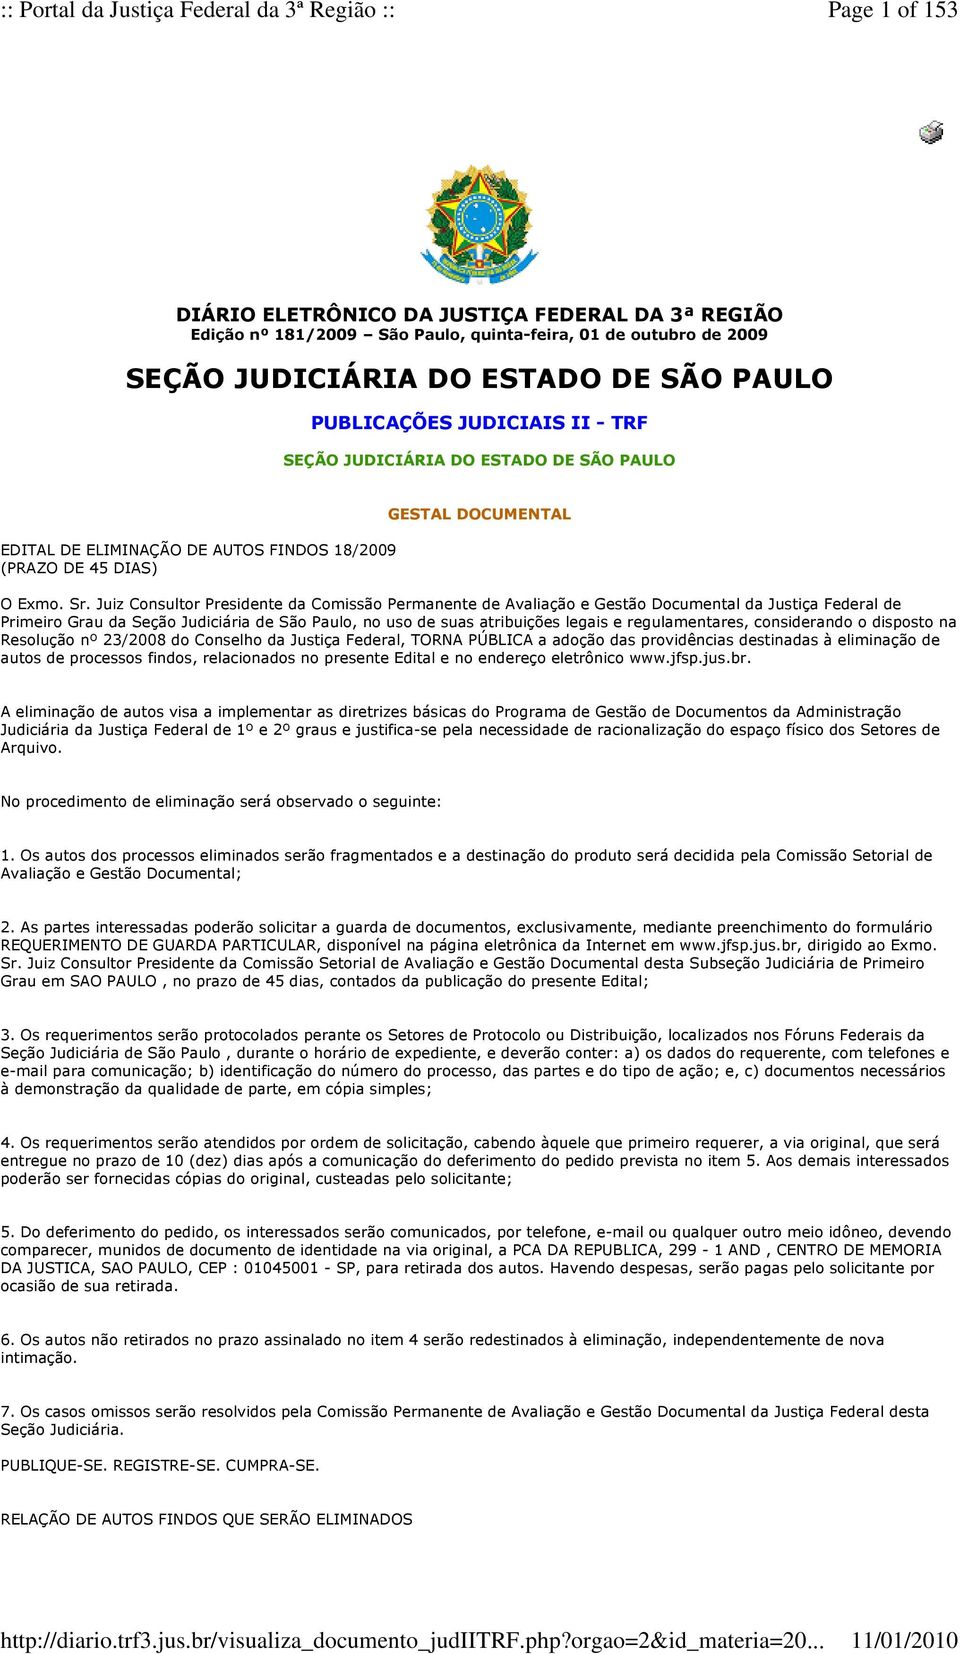 Juiz Consultor Presidente da Comissão Permanente de Avaliação e Gestão Documental da Justiça Federal de Primeiro Grau da Seção Judiciária de São Paulo, no uso de suas atribuições legais e